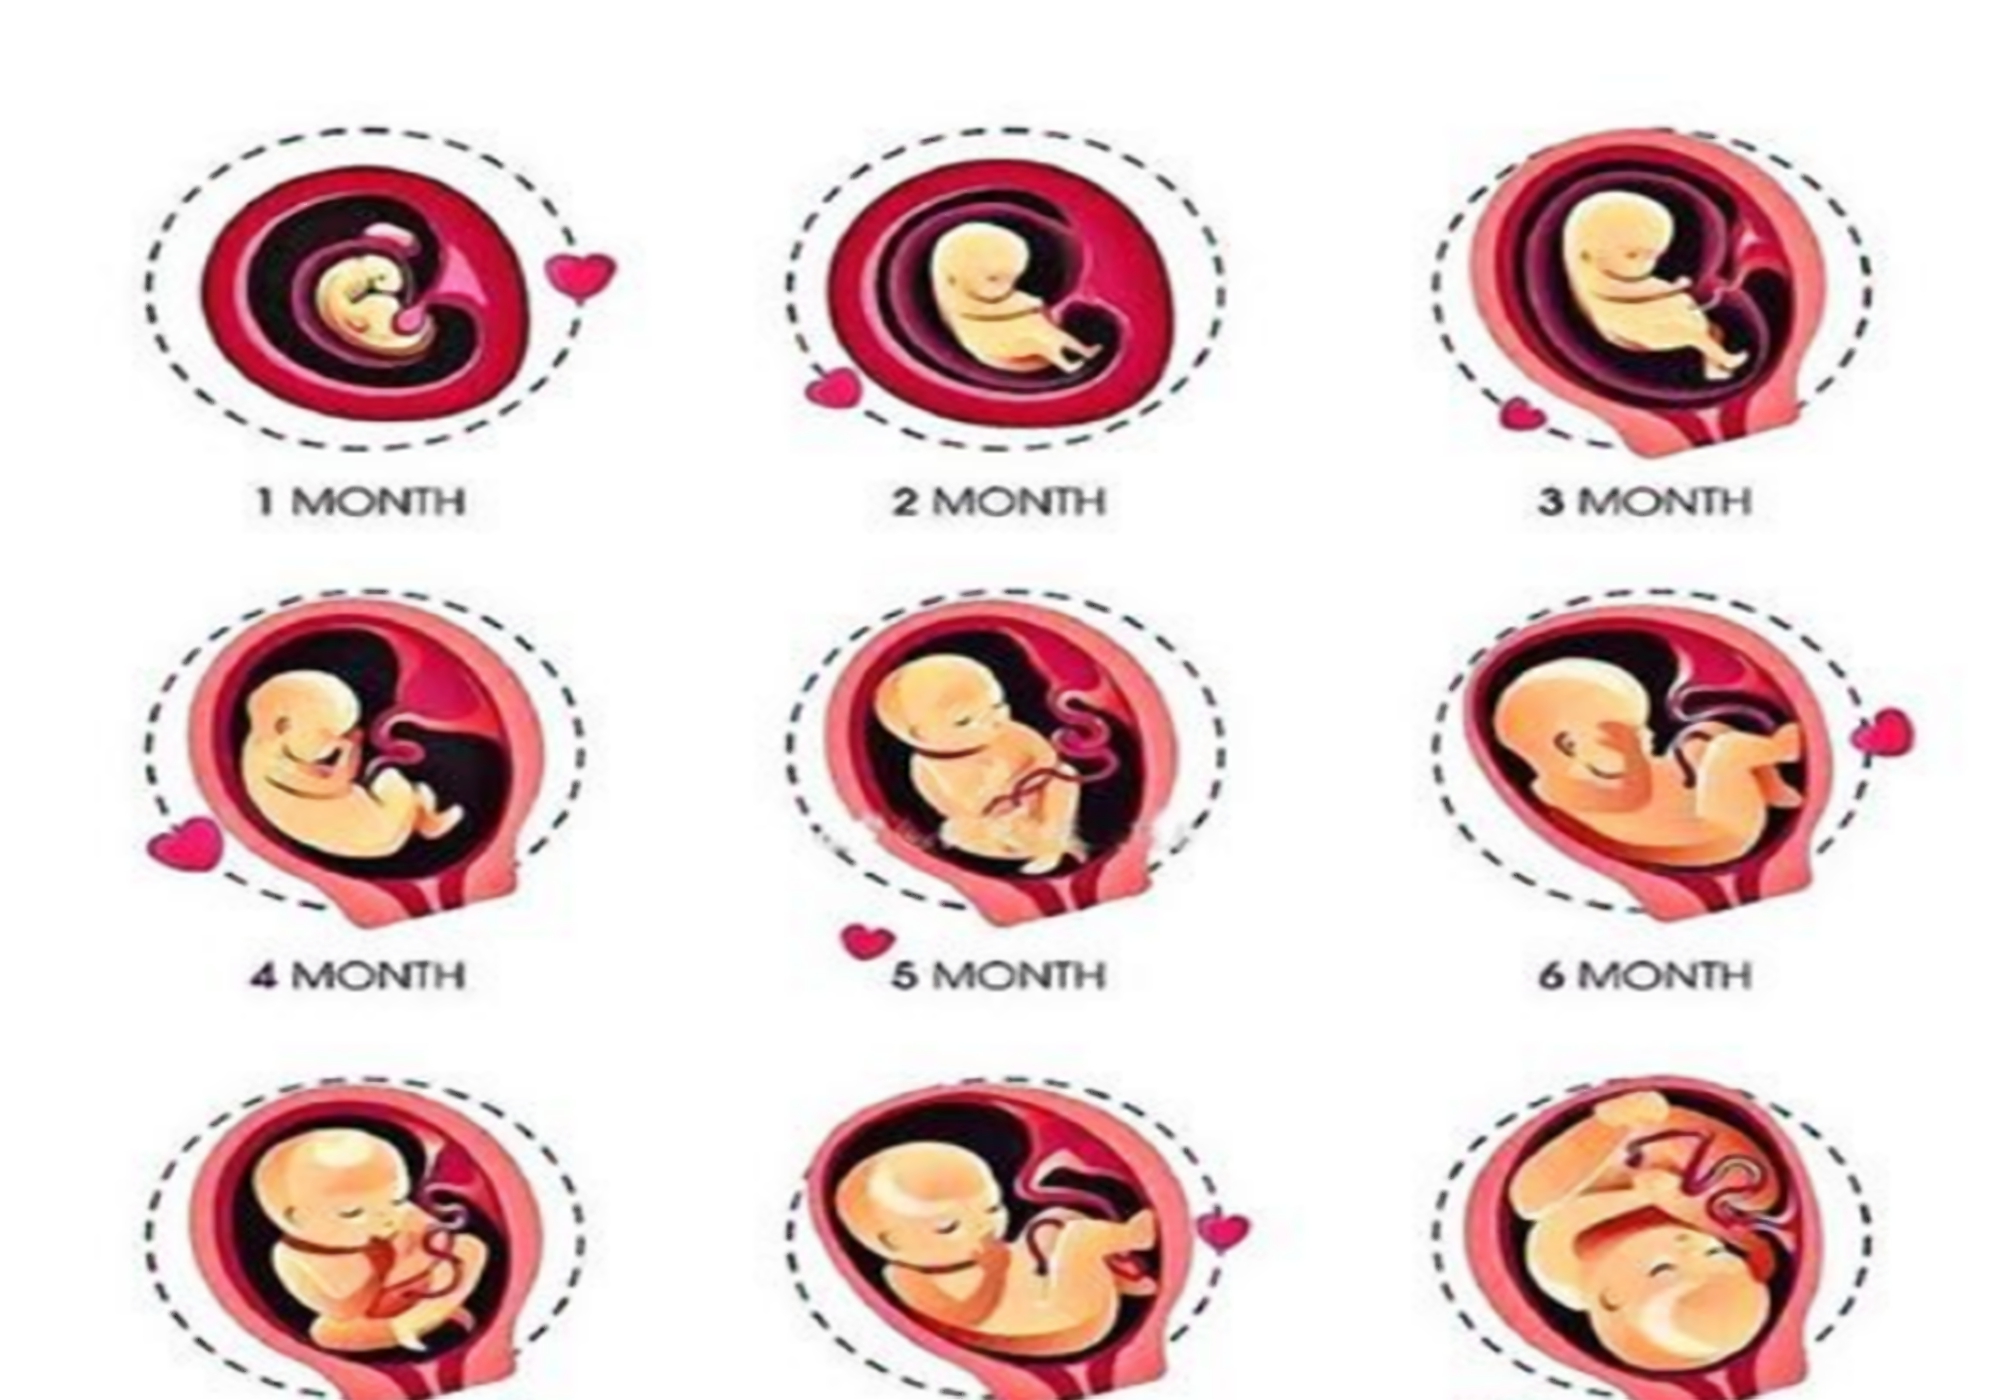 孕囊到器官生长完整,需要42周的时间,不同的周期里,宝宝的发育情况都